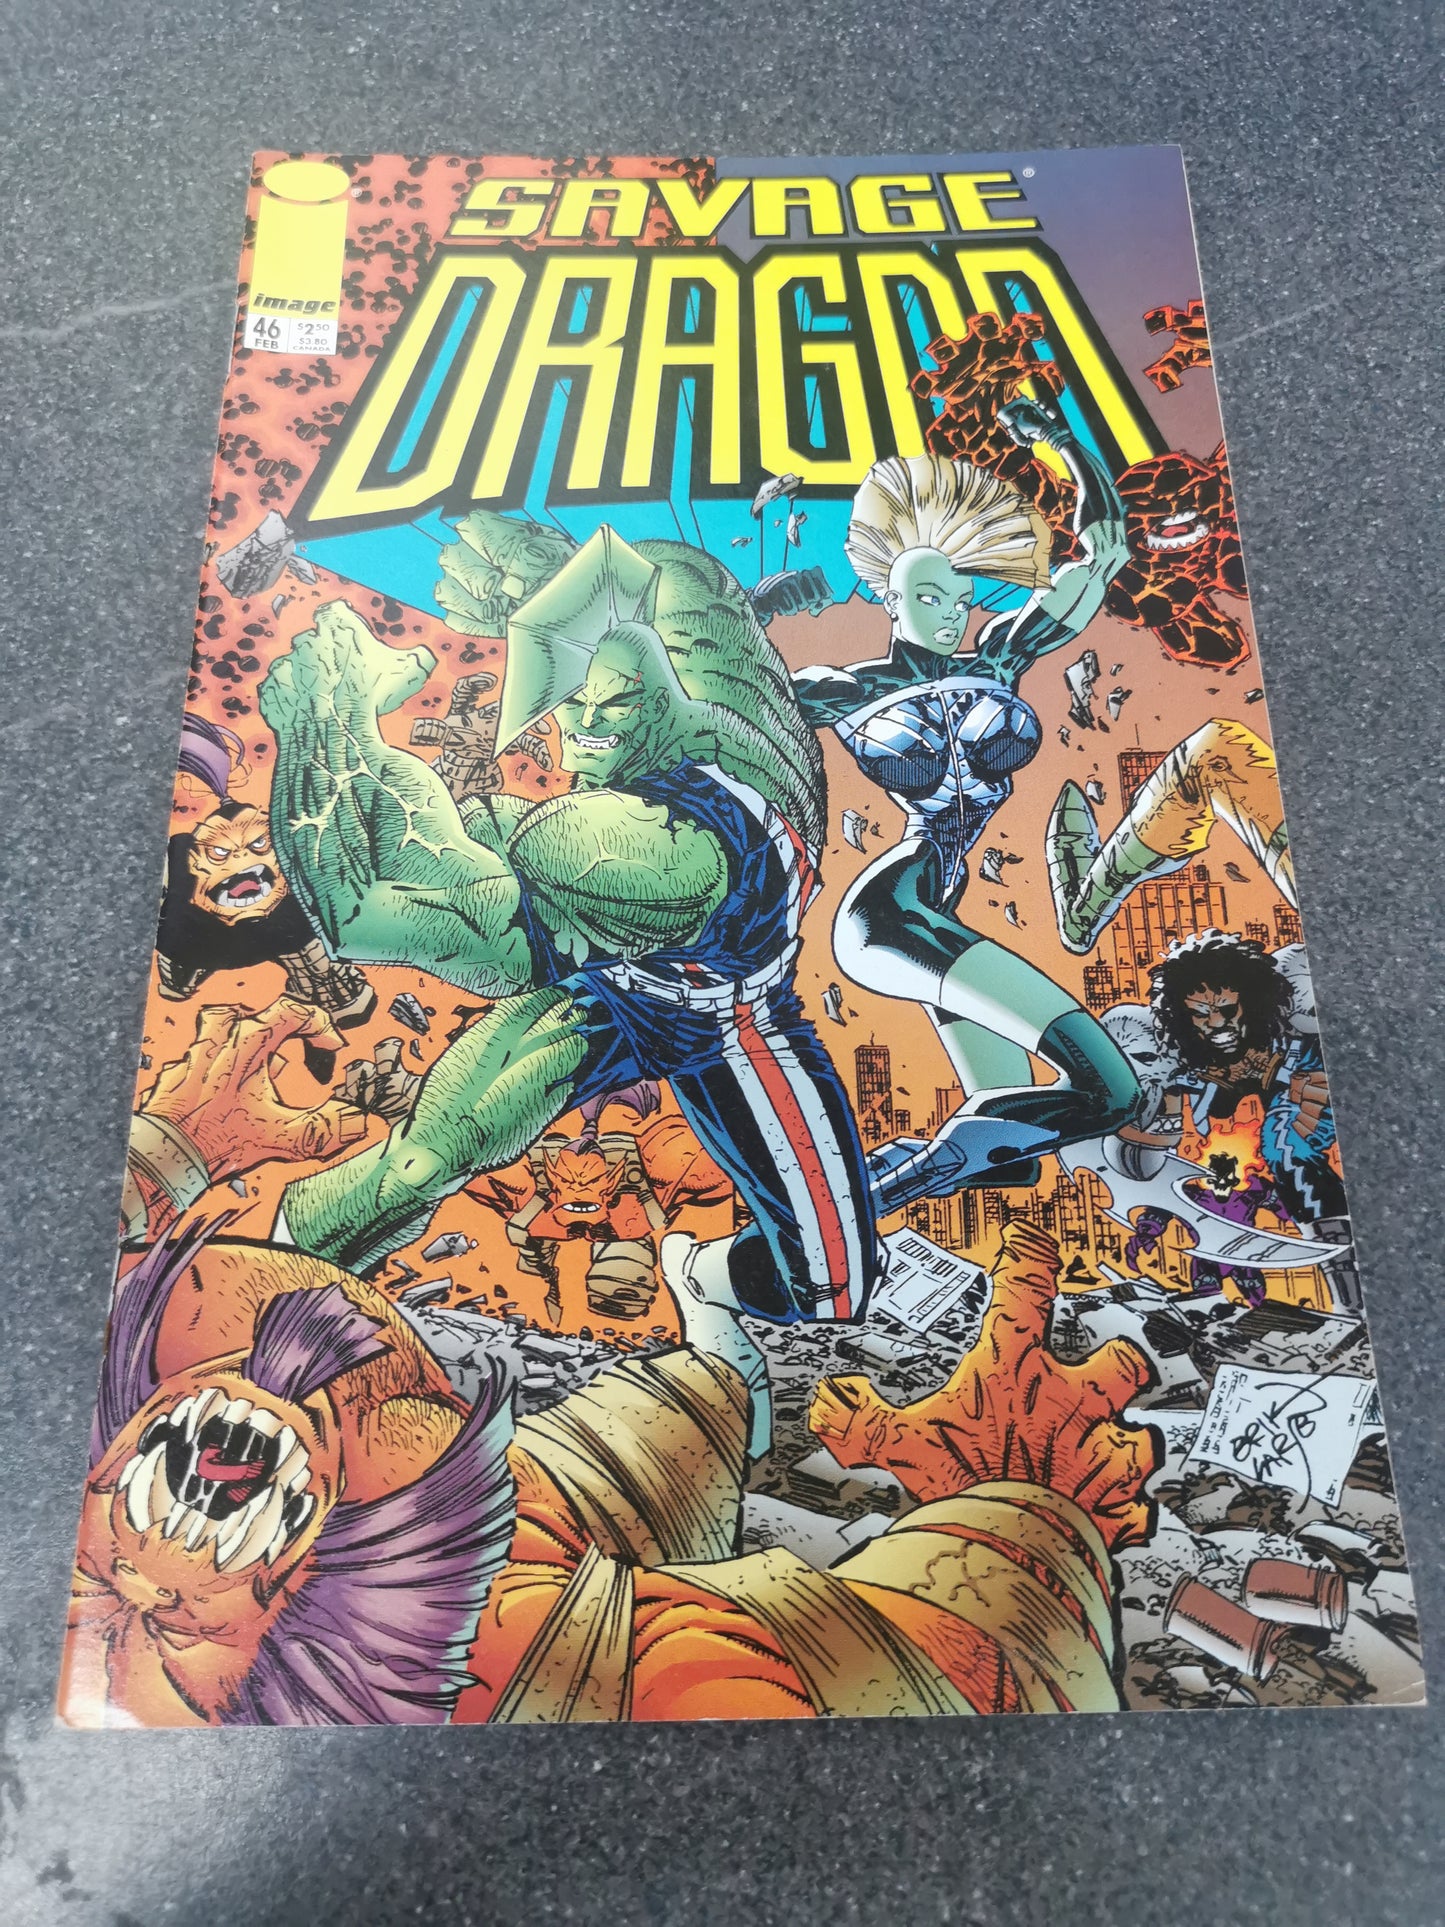 The Savage Dragon #46 1998 Image comics